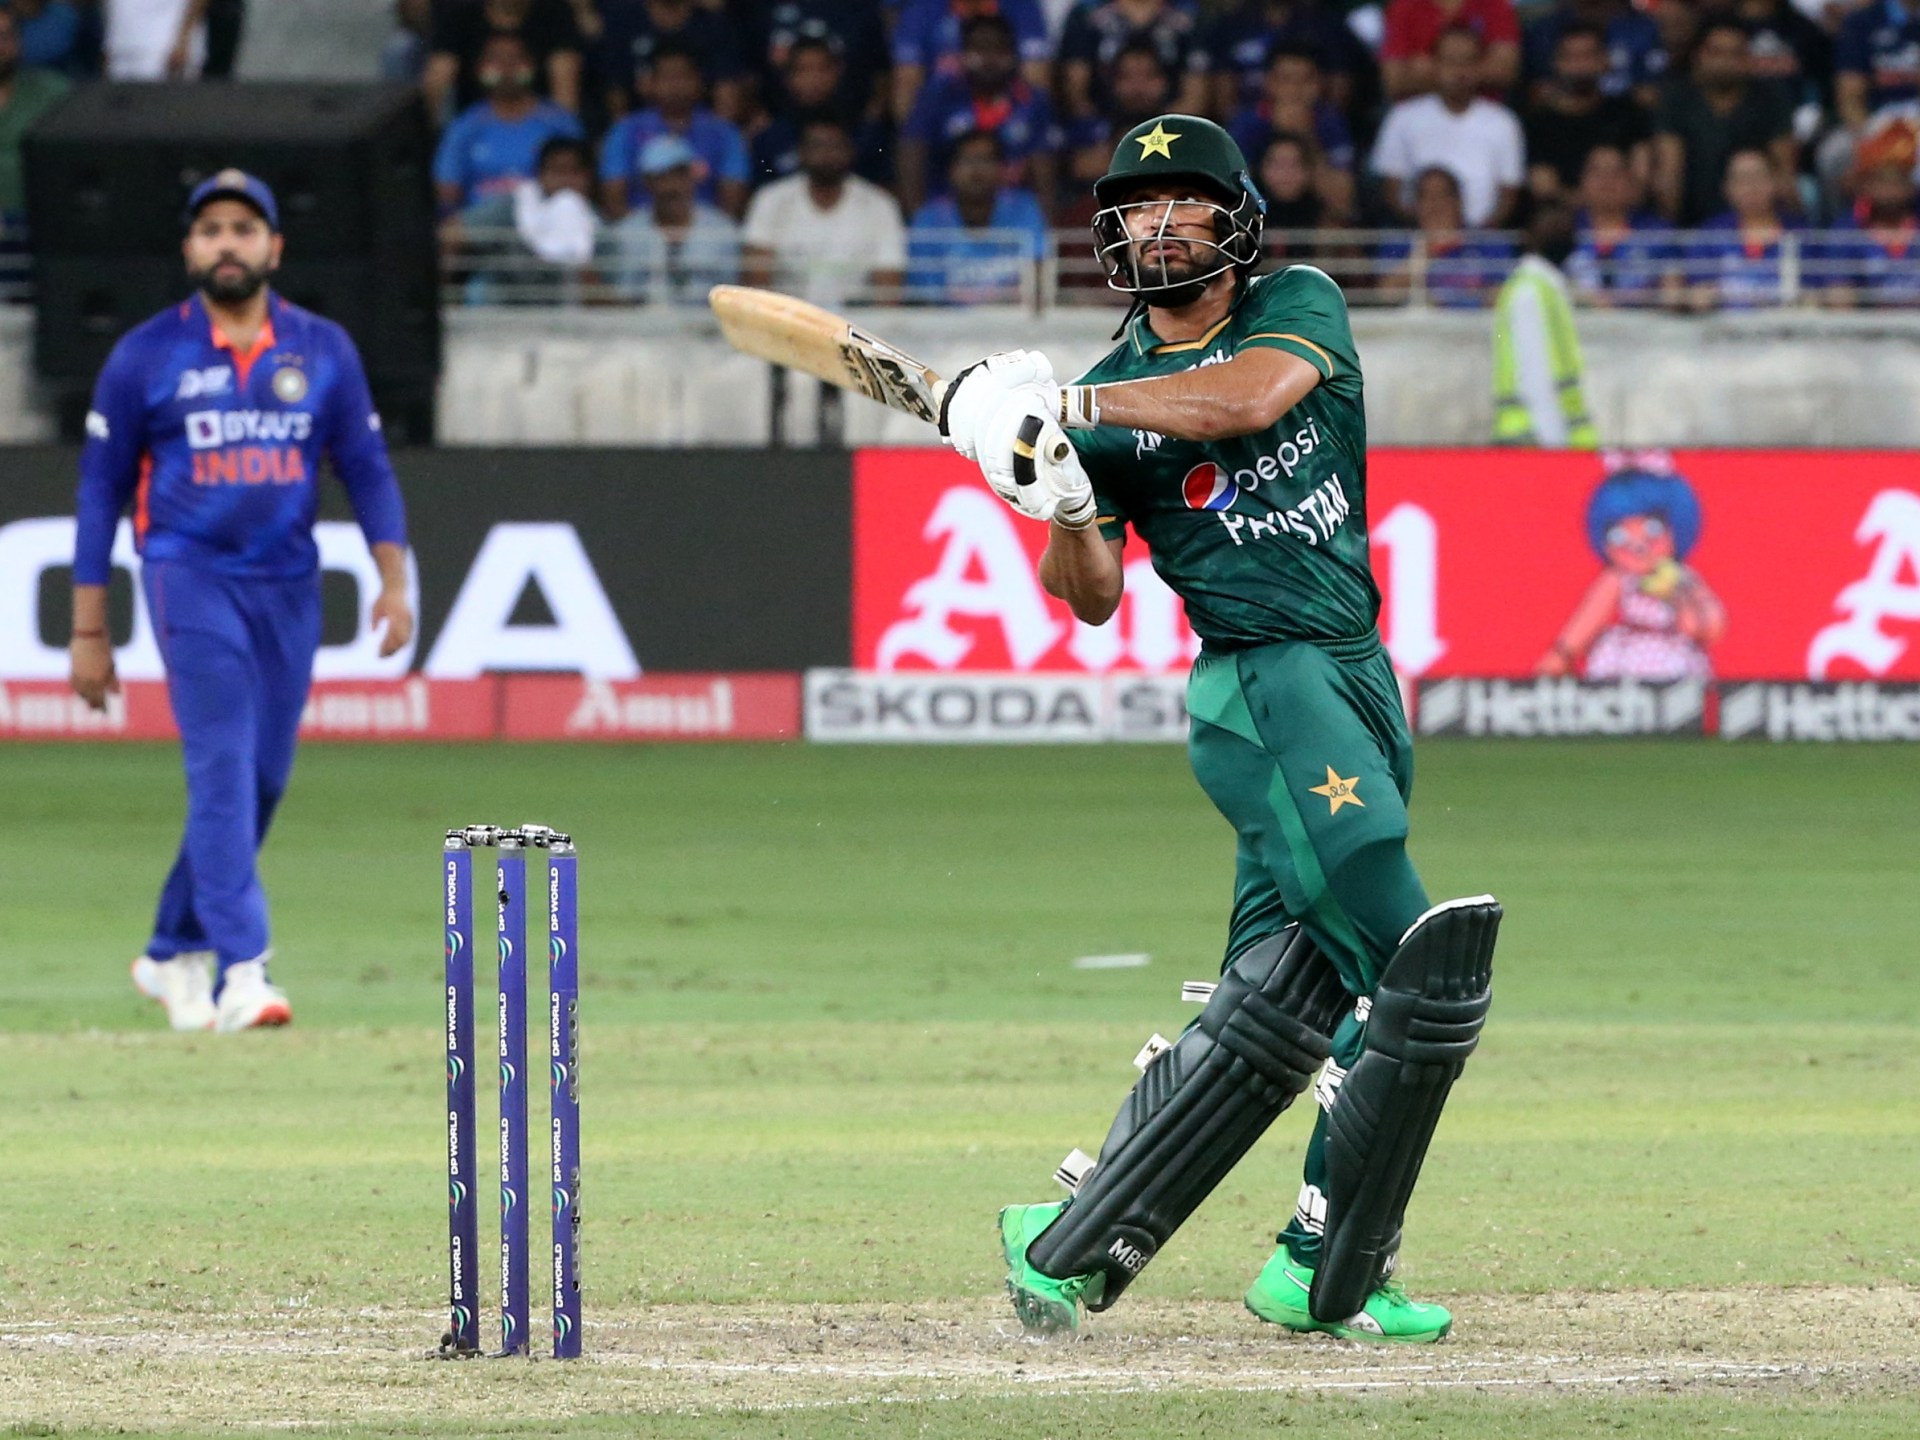 Dewan kriket Pakistan mungkin mencoba mengadaptasi model hibrida Piala Asia |  Berita Kriket